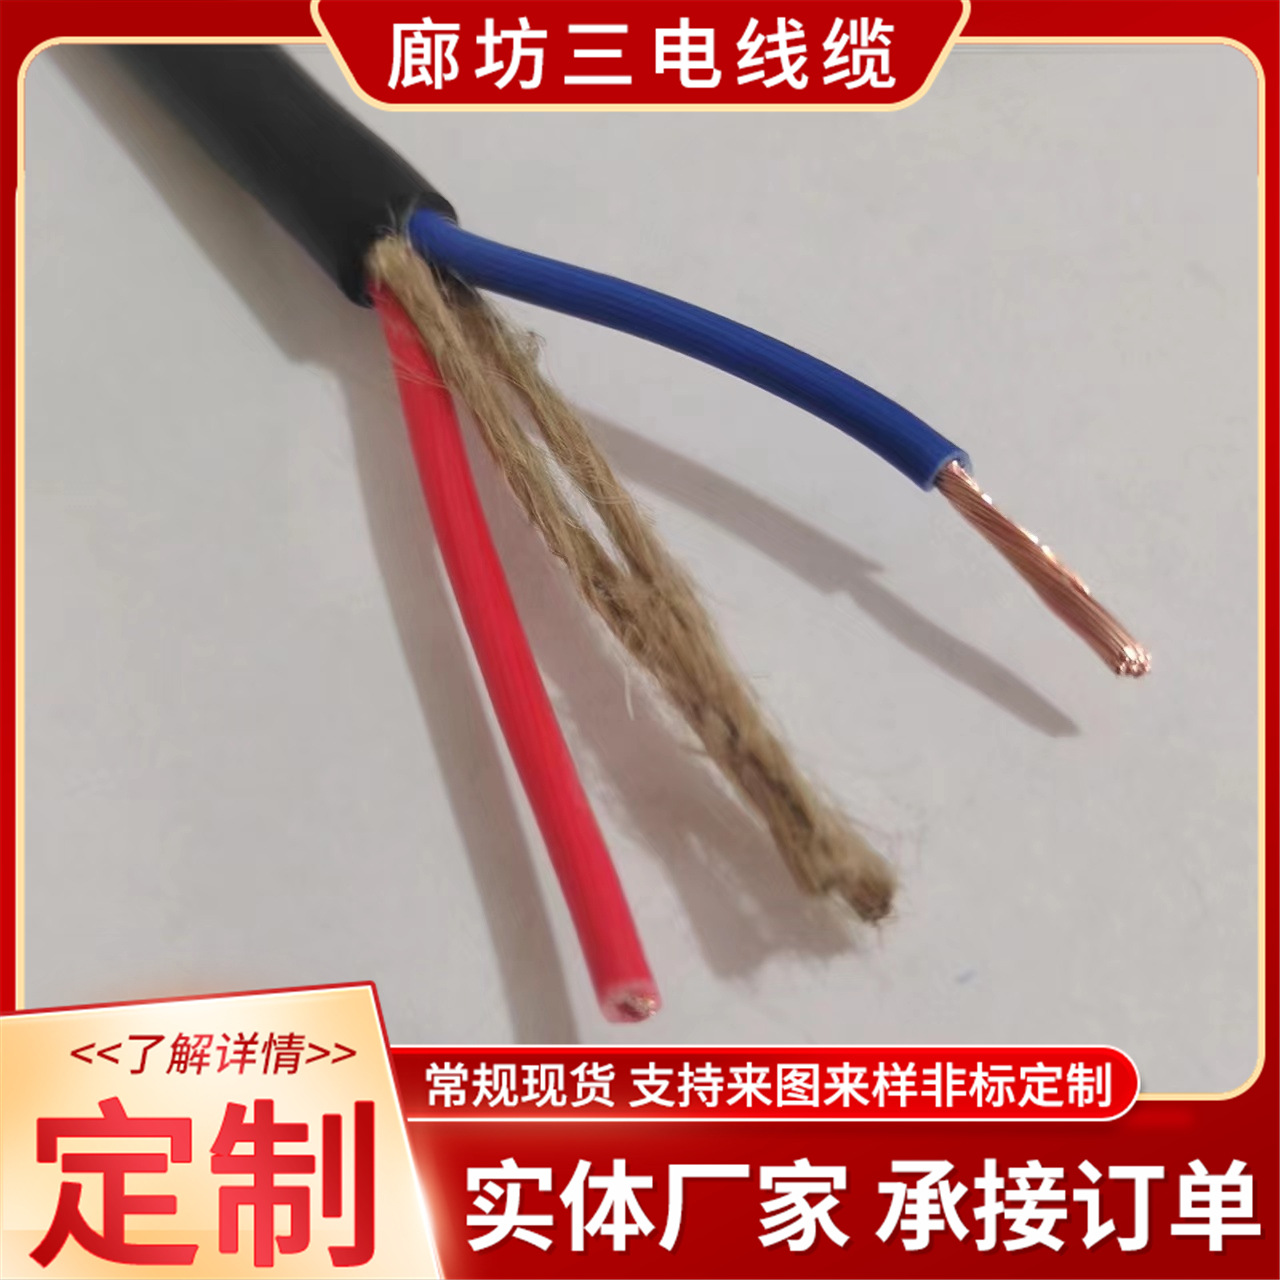 电力电缆 YC-2*1.5橡套软电缆 yc重型橡套电缆 铜芯电缆 动力电缆